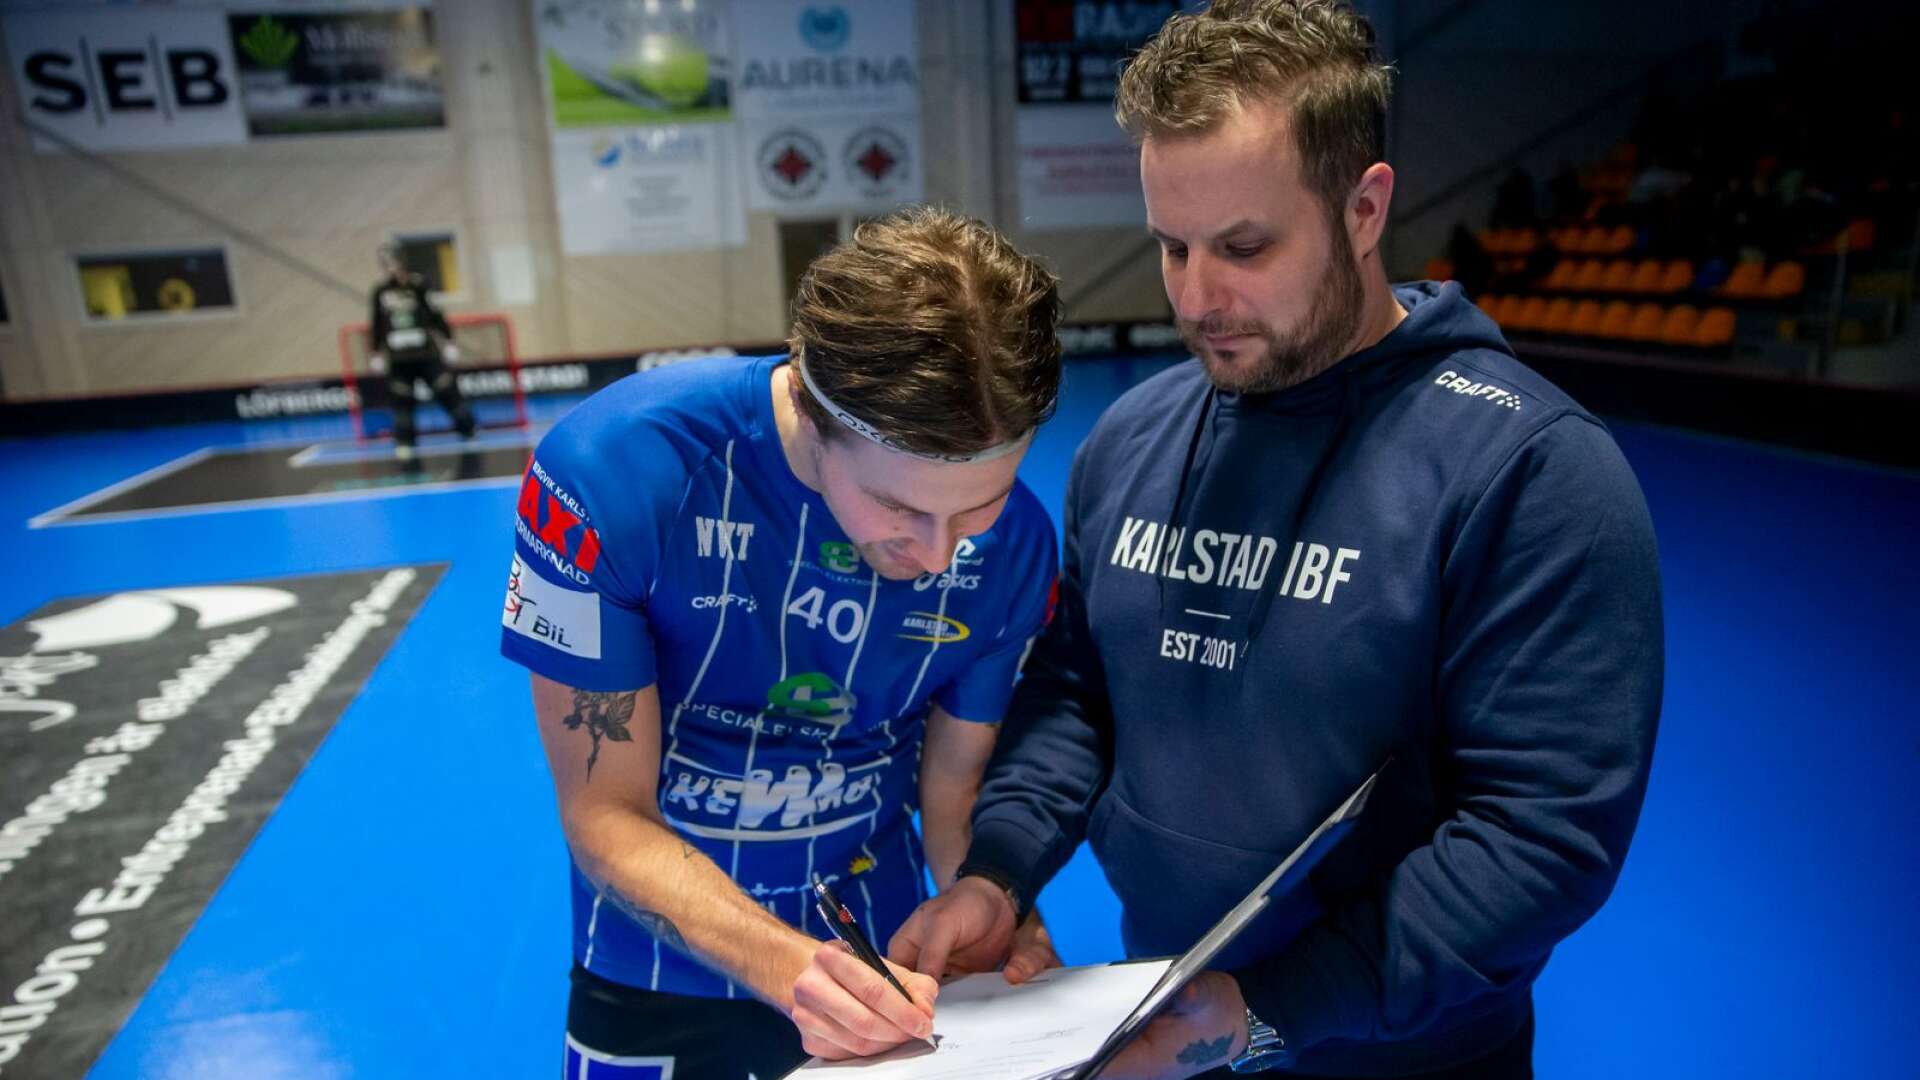 Andre Lundgren skrev i februari på ett nytt kontrakt 1+1 år med Karlstad IBF där Daniel Wellerfors (till höger) är sportchef för herrlaget i allsvenskan.